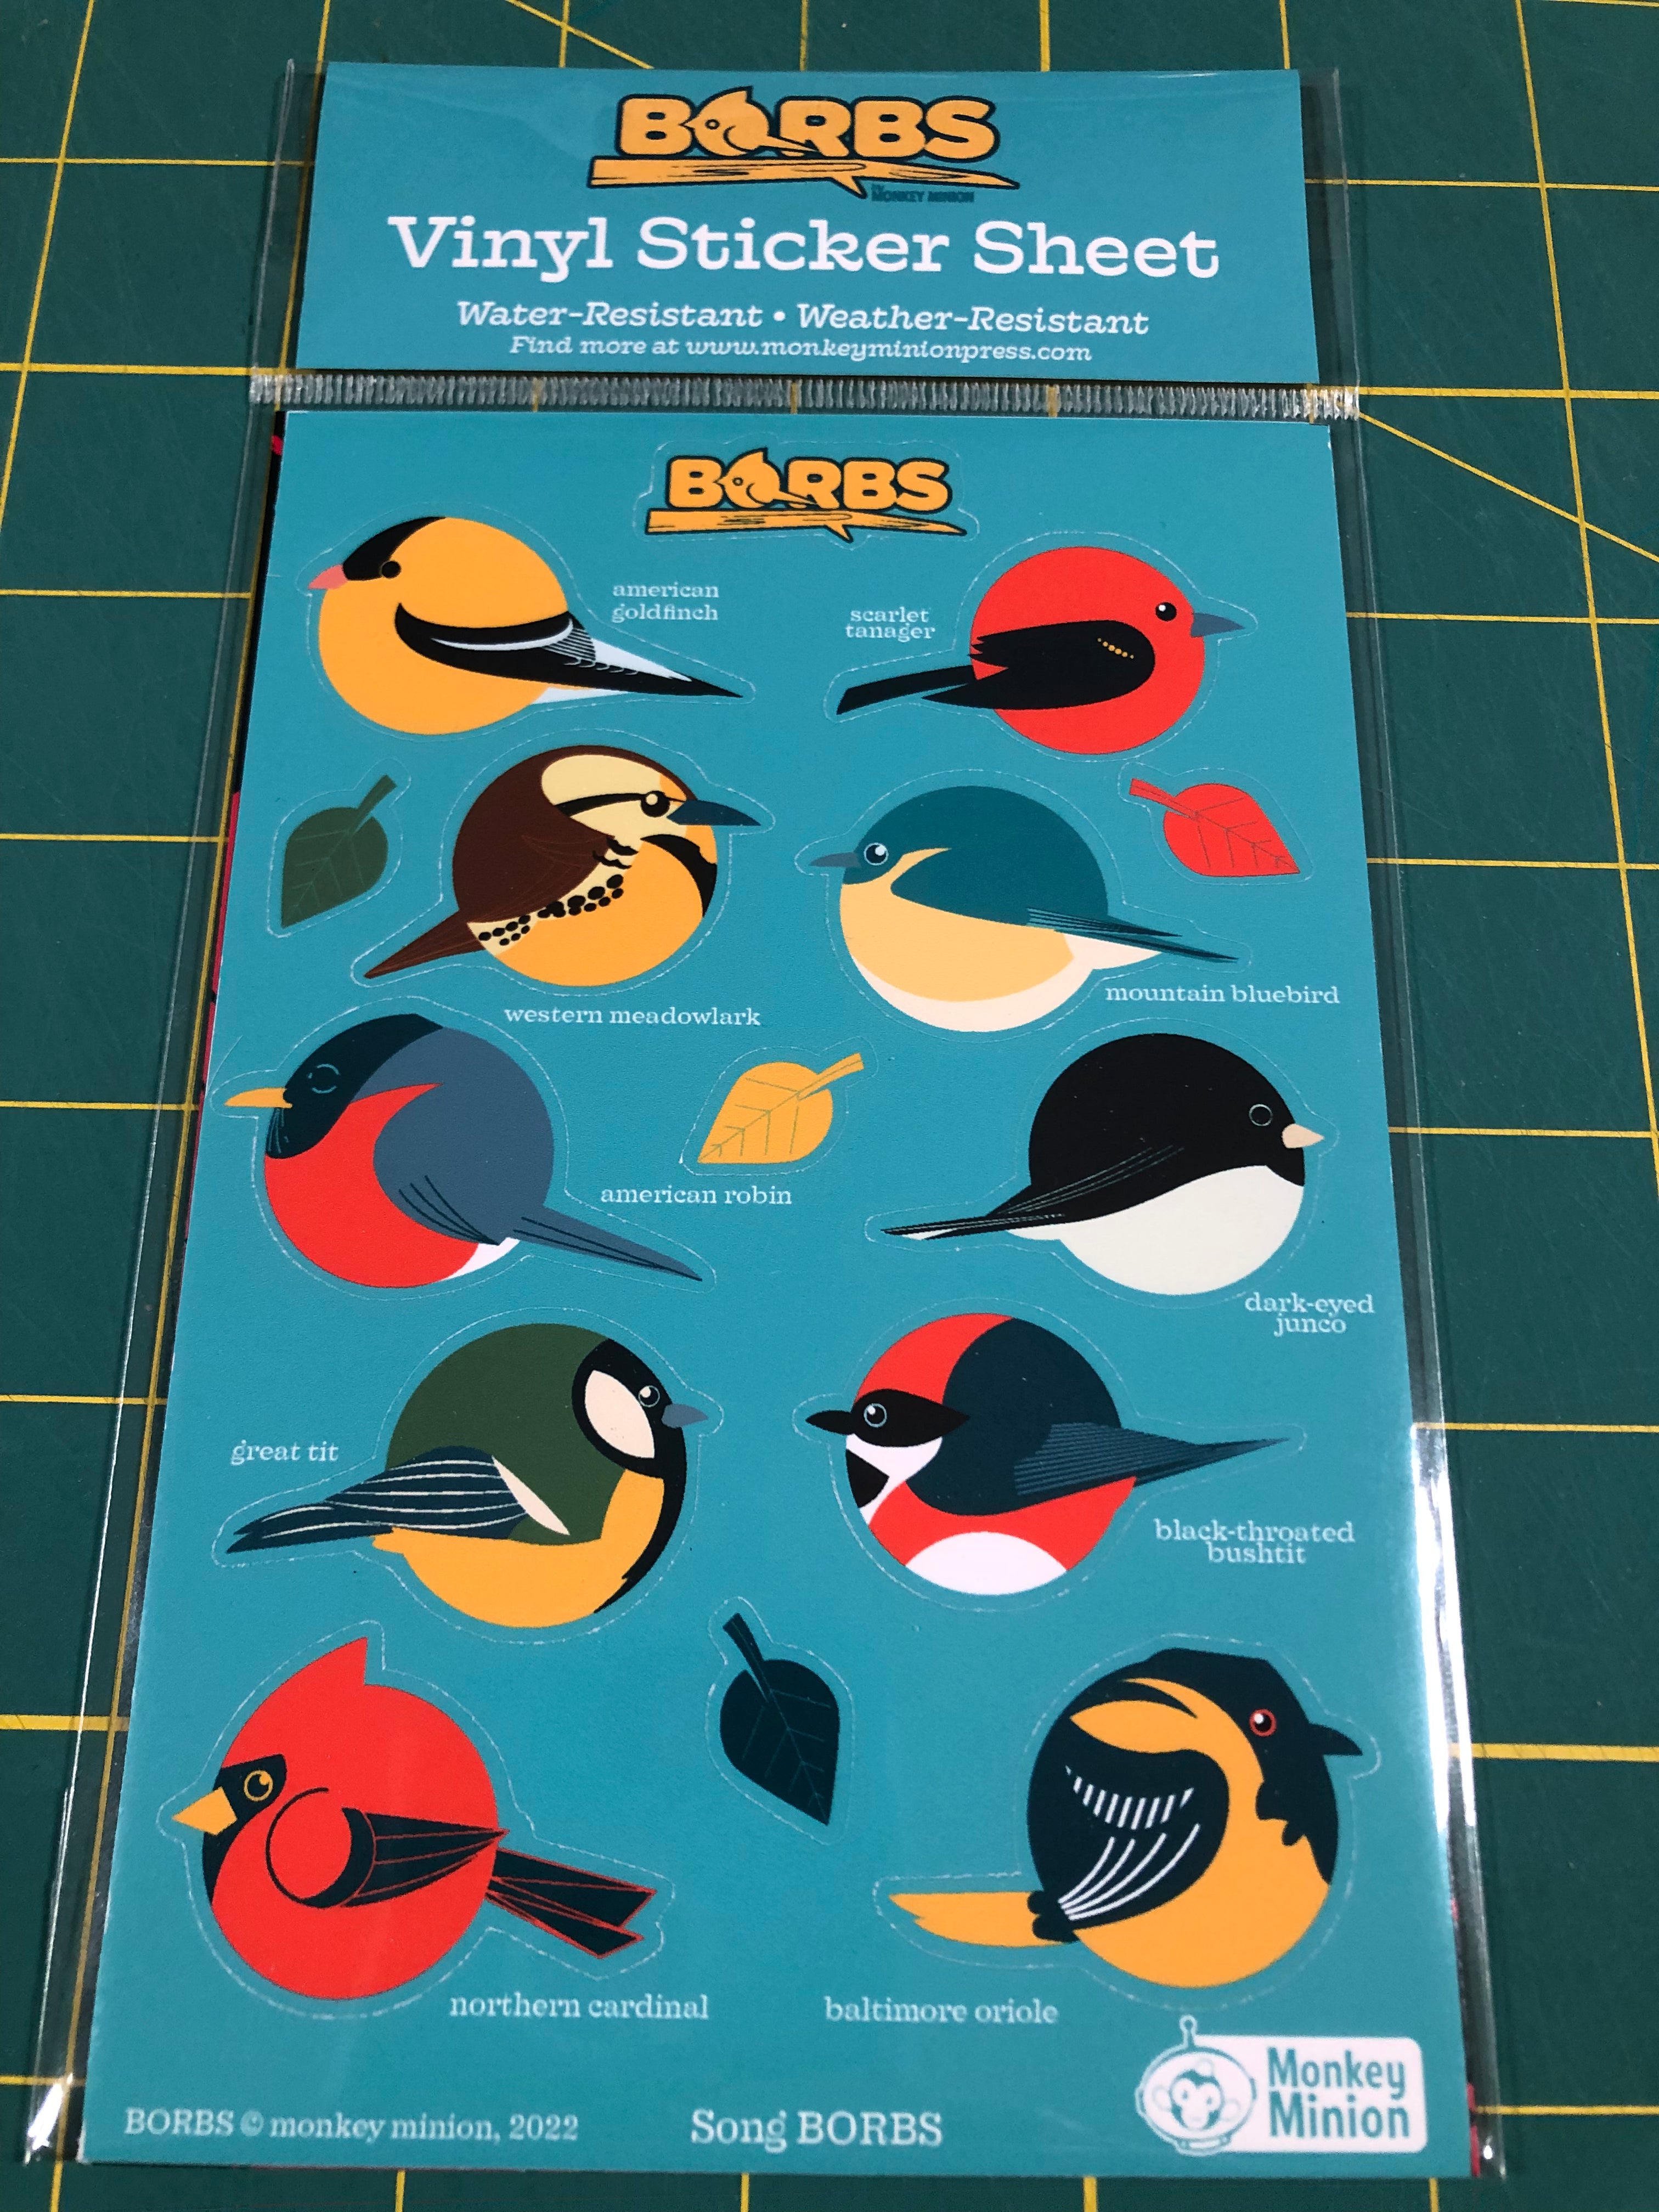 Goldfinch Bird Waterproof Vinyl Sticker